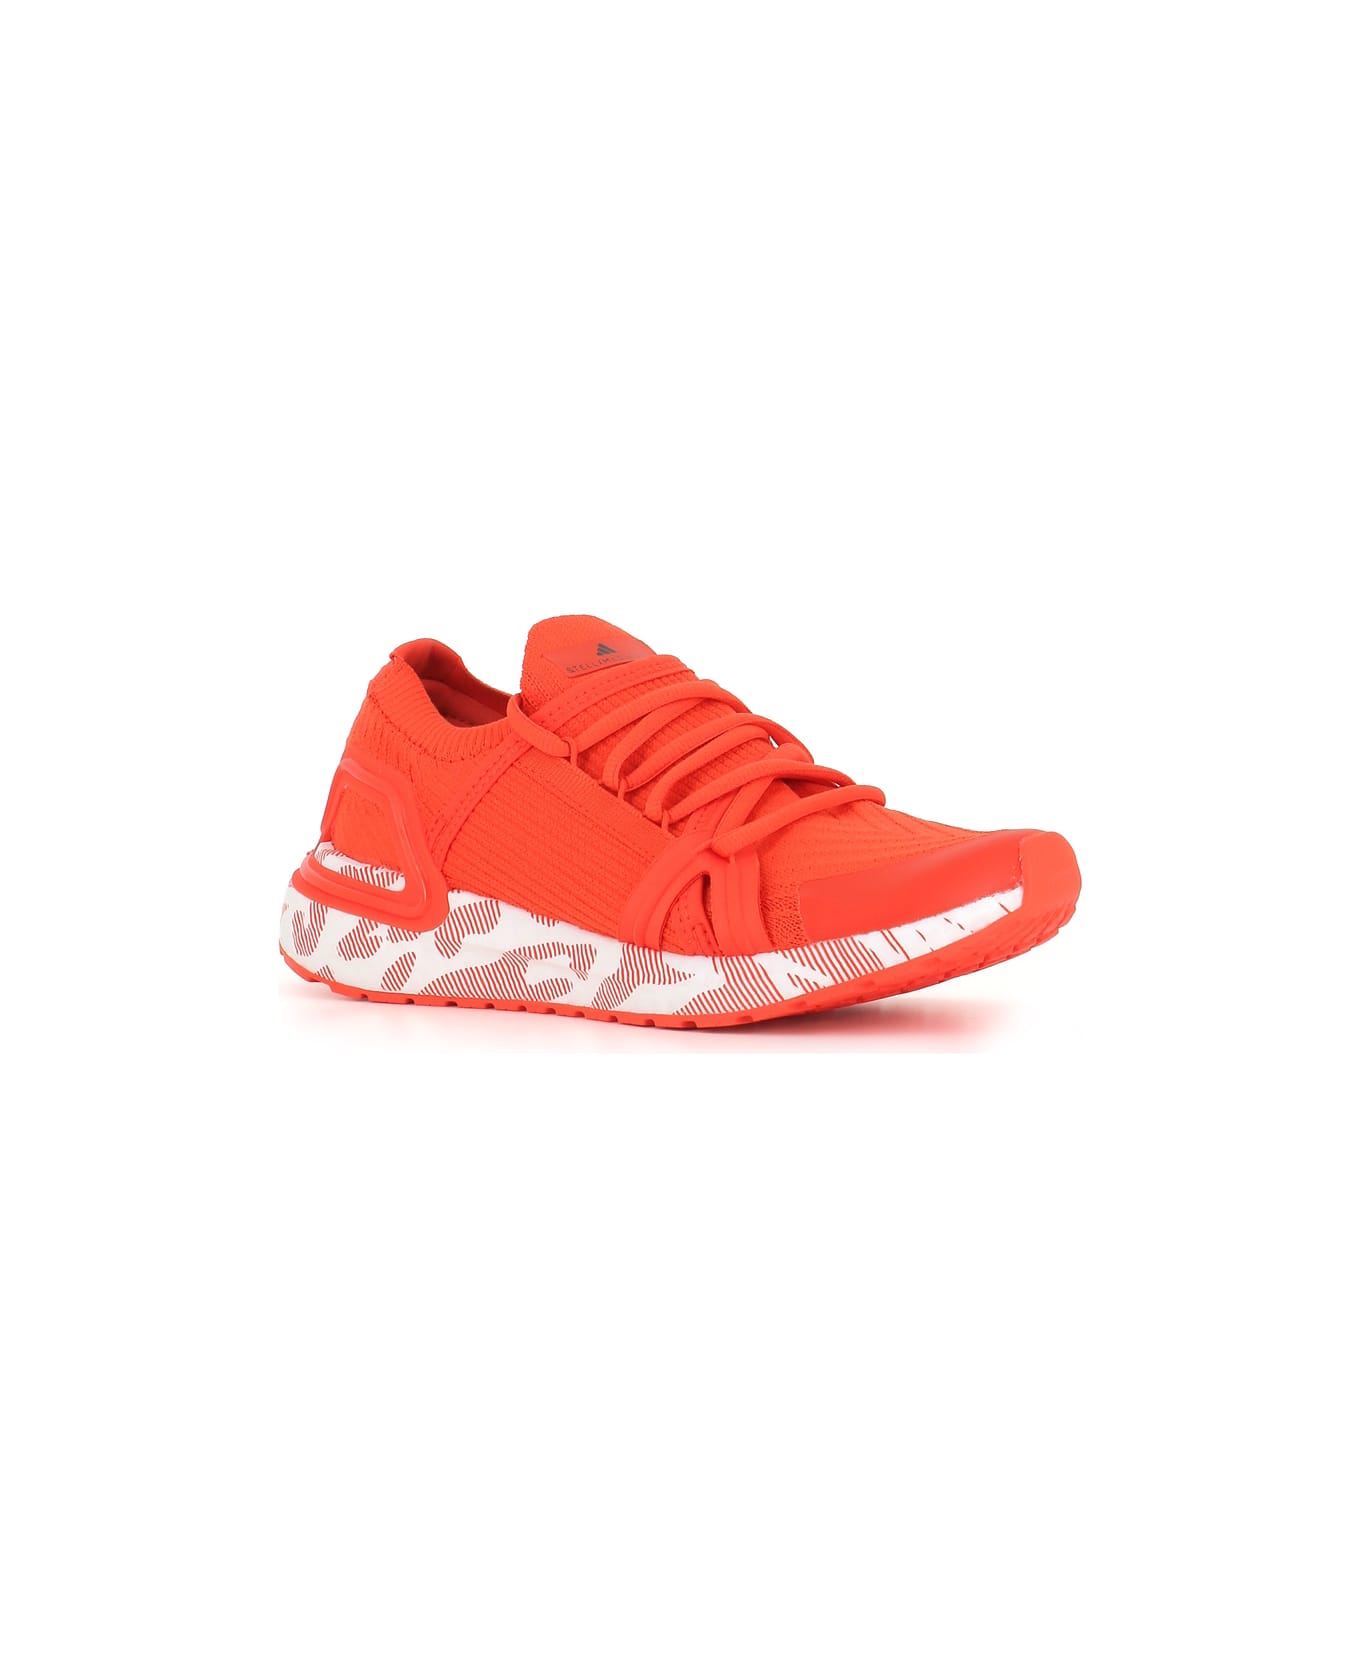 Adidas by Stella McCartney Sneakers Asmc Ultraboost 20 - Arancio fluo スニーカー